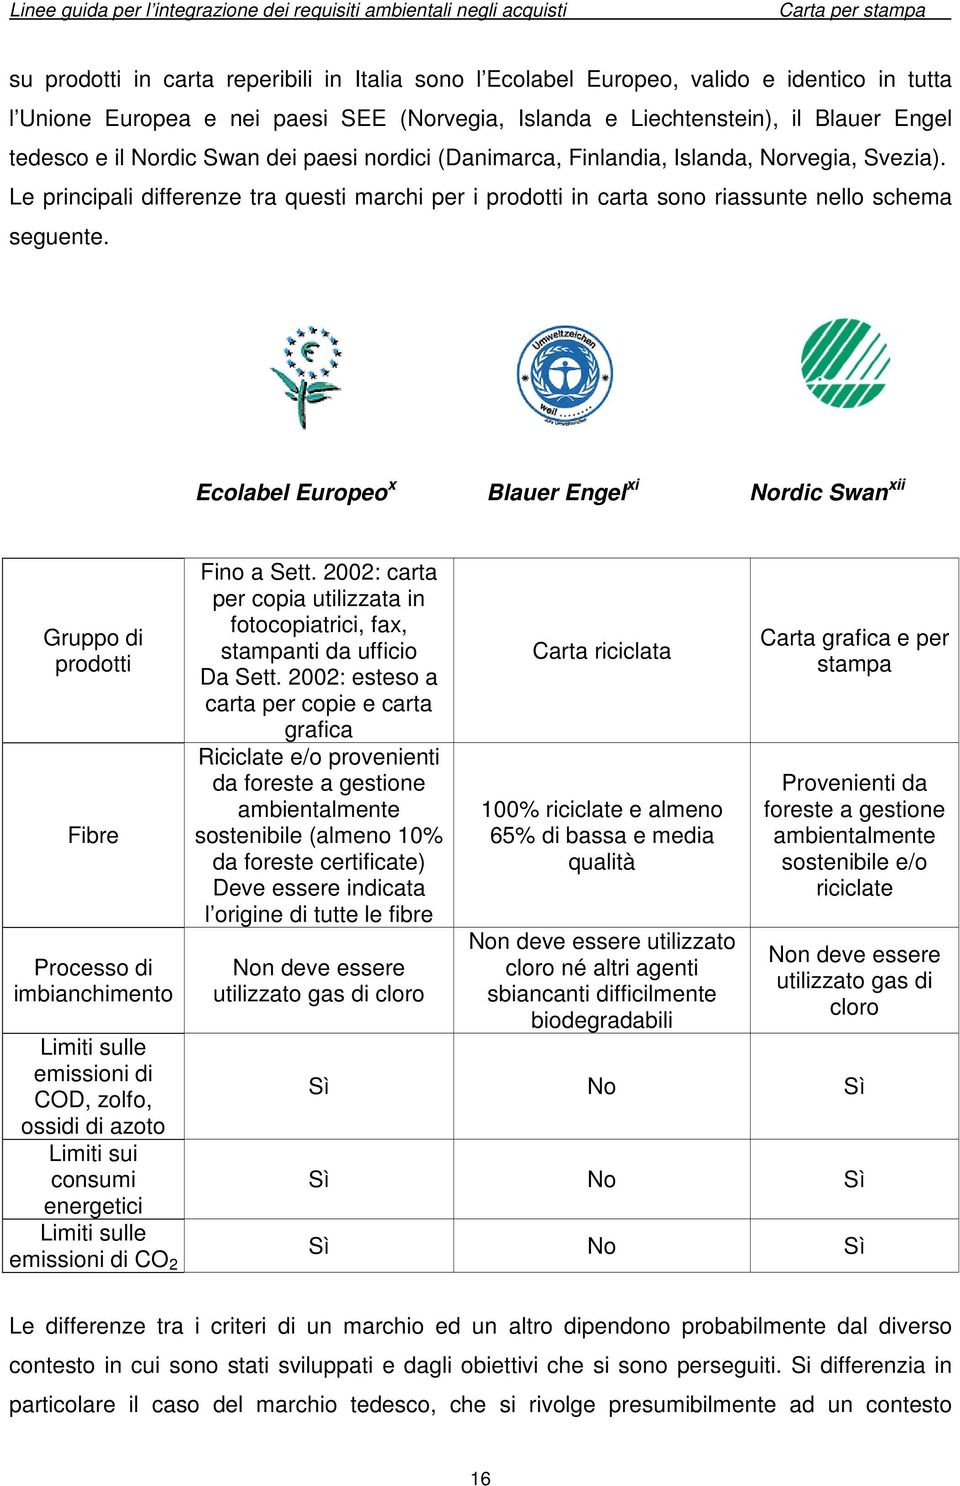 Ecolabel Europeo x Blauer Engel xi Nordic Swan xii Gruppo di prodotti Fibre Processo di imbianchimento Limiti sulle emissioni di COD, zolfo, ossidi di azoto Limiti sui consumi energetici Limiti sulle